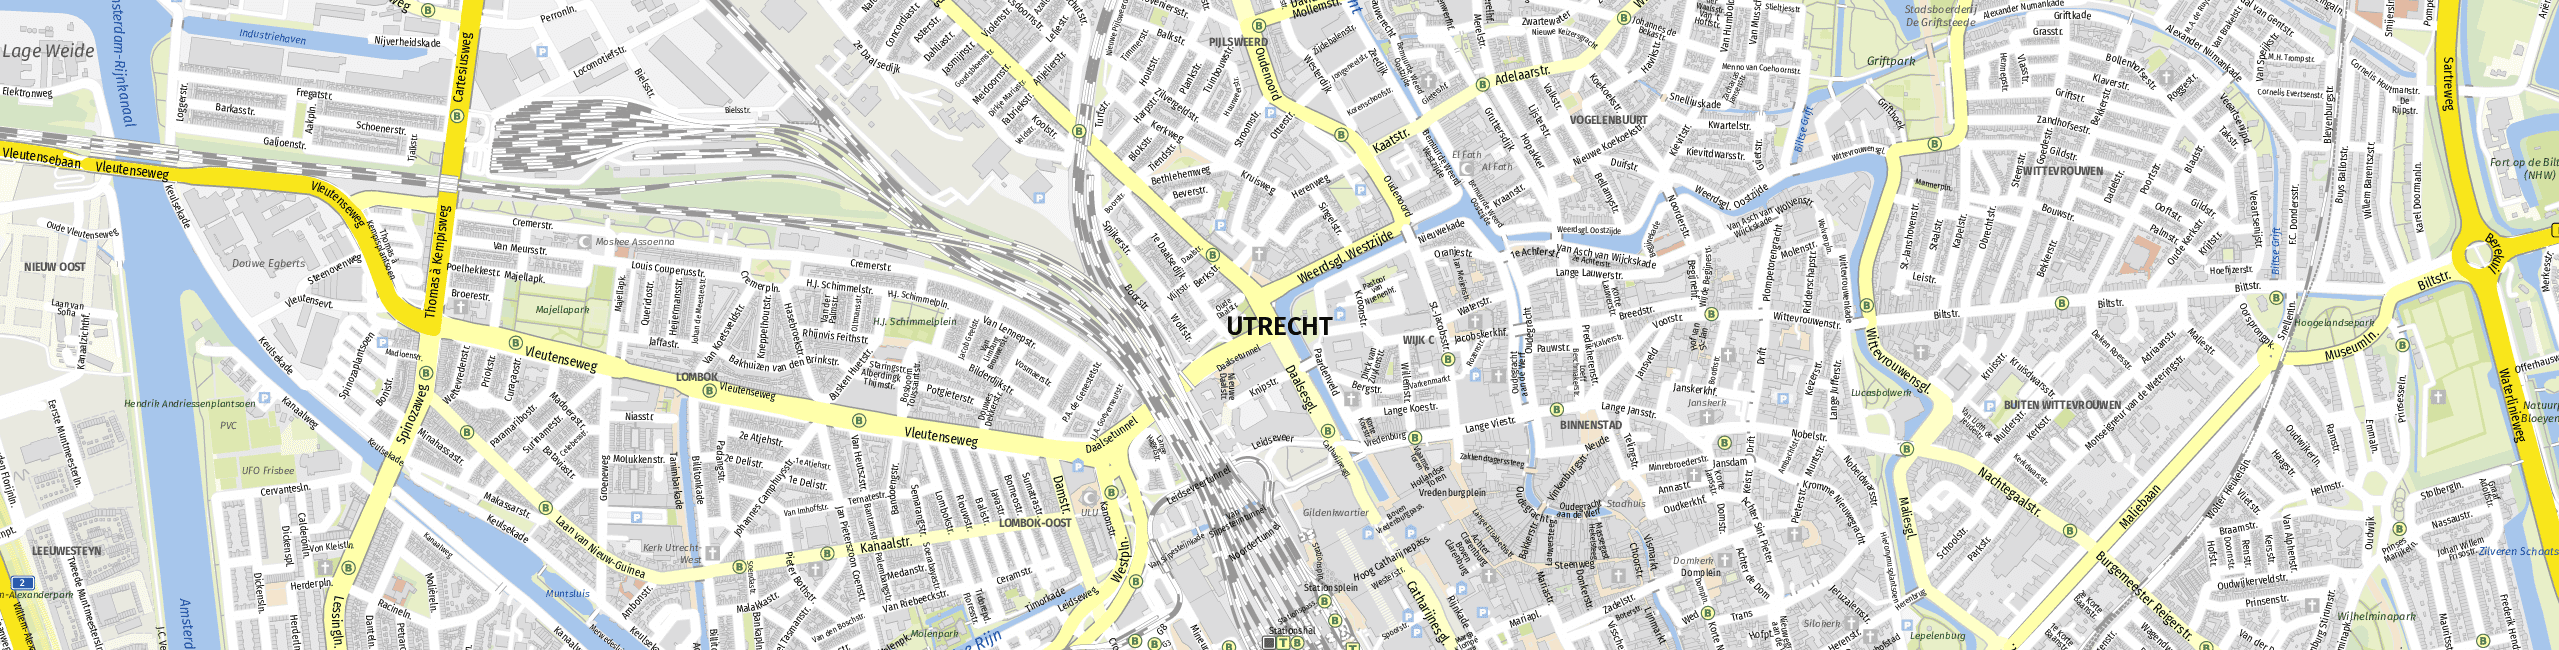 Stadtplan Utrecht zum Downloaden.